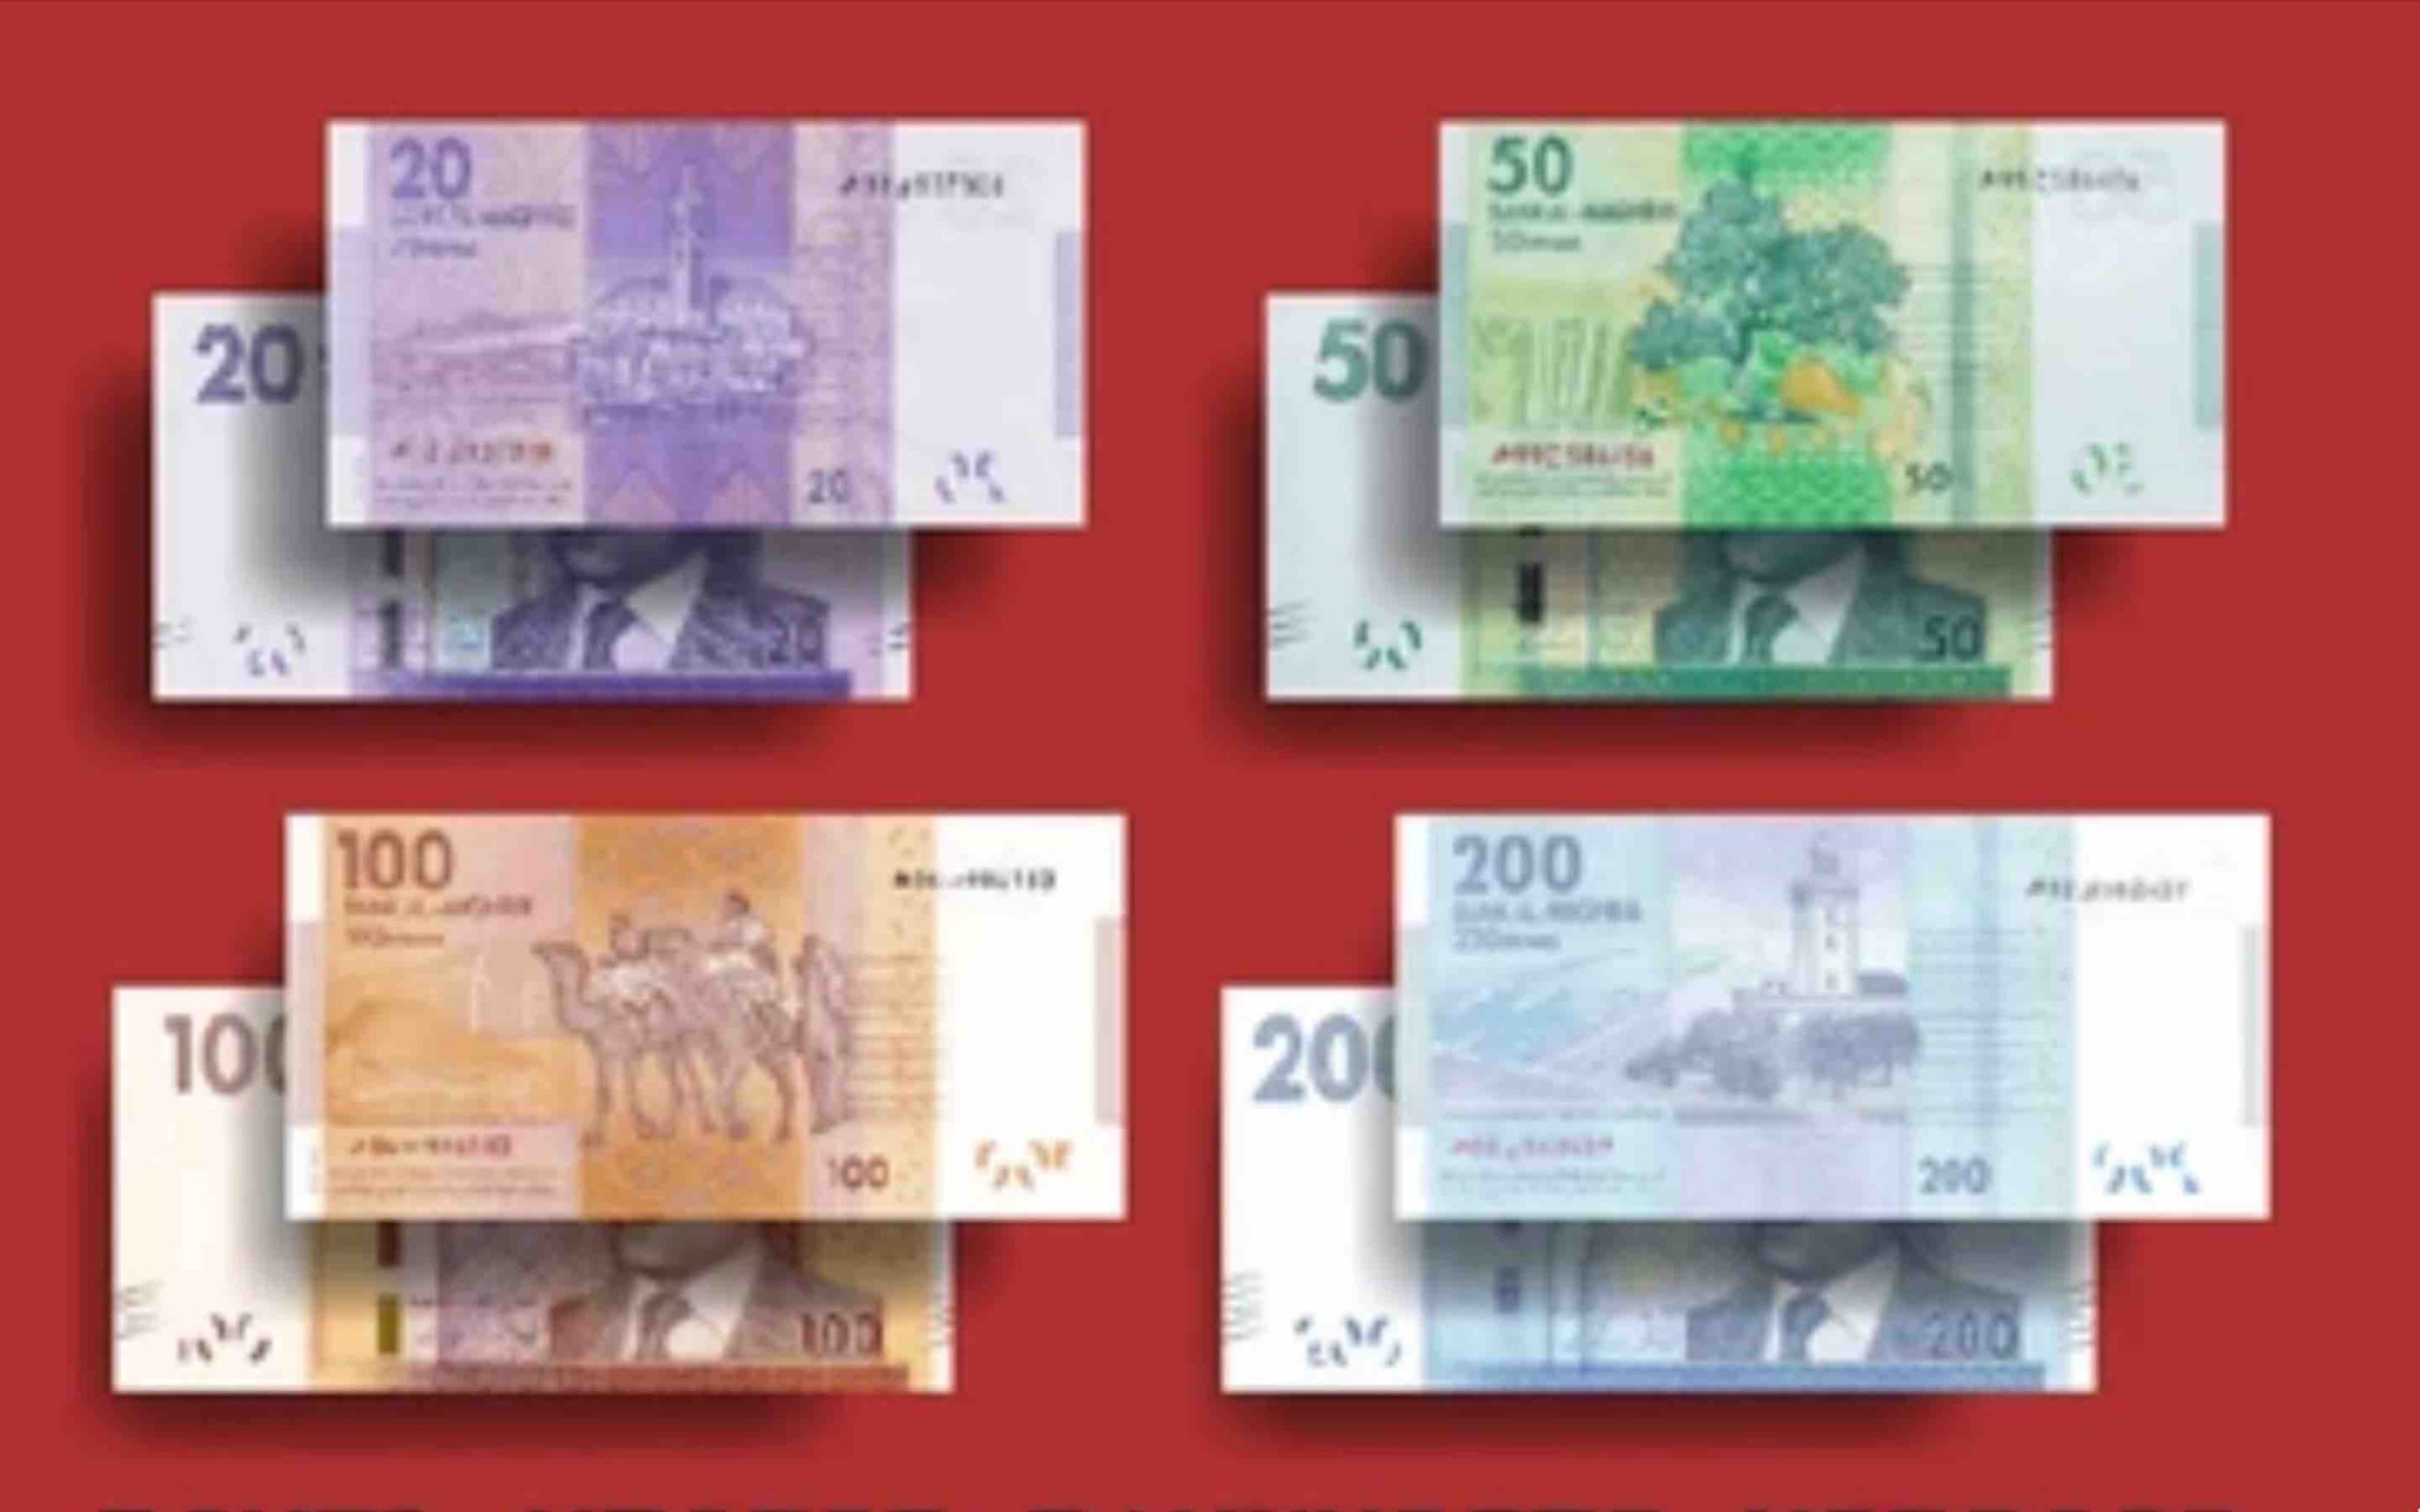 billets de banque du Maroc Moroccan banknotes 20 50 100 200 Morocco Bank notes